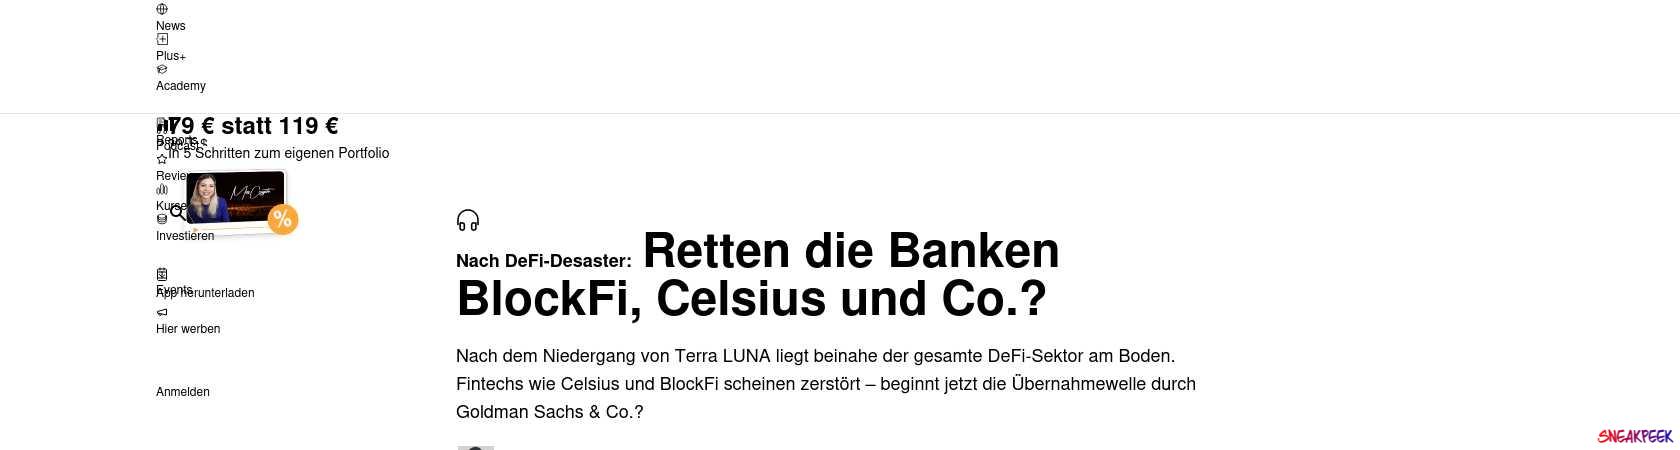 Read the full Article:  ⭲ Nach DeFi-Desaster: Retten die Banken BlockFi, Celsius und Co.?